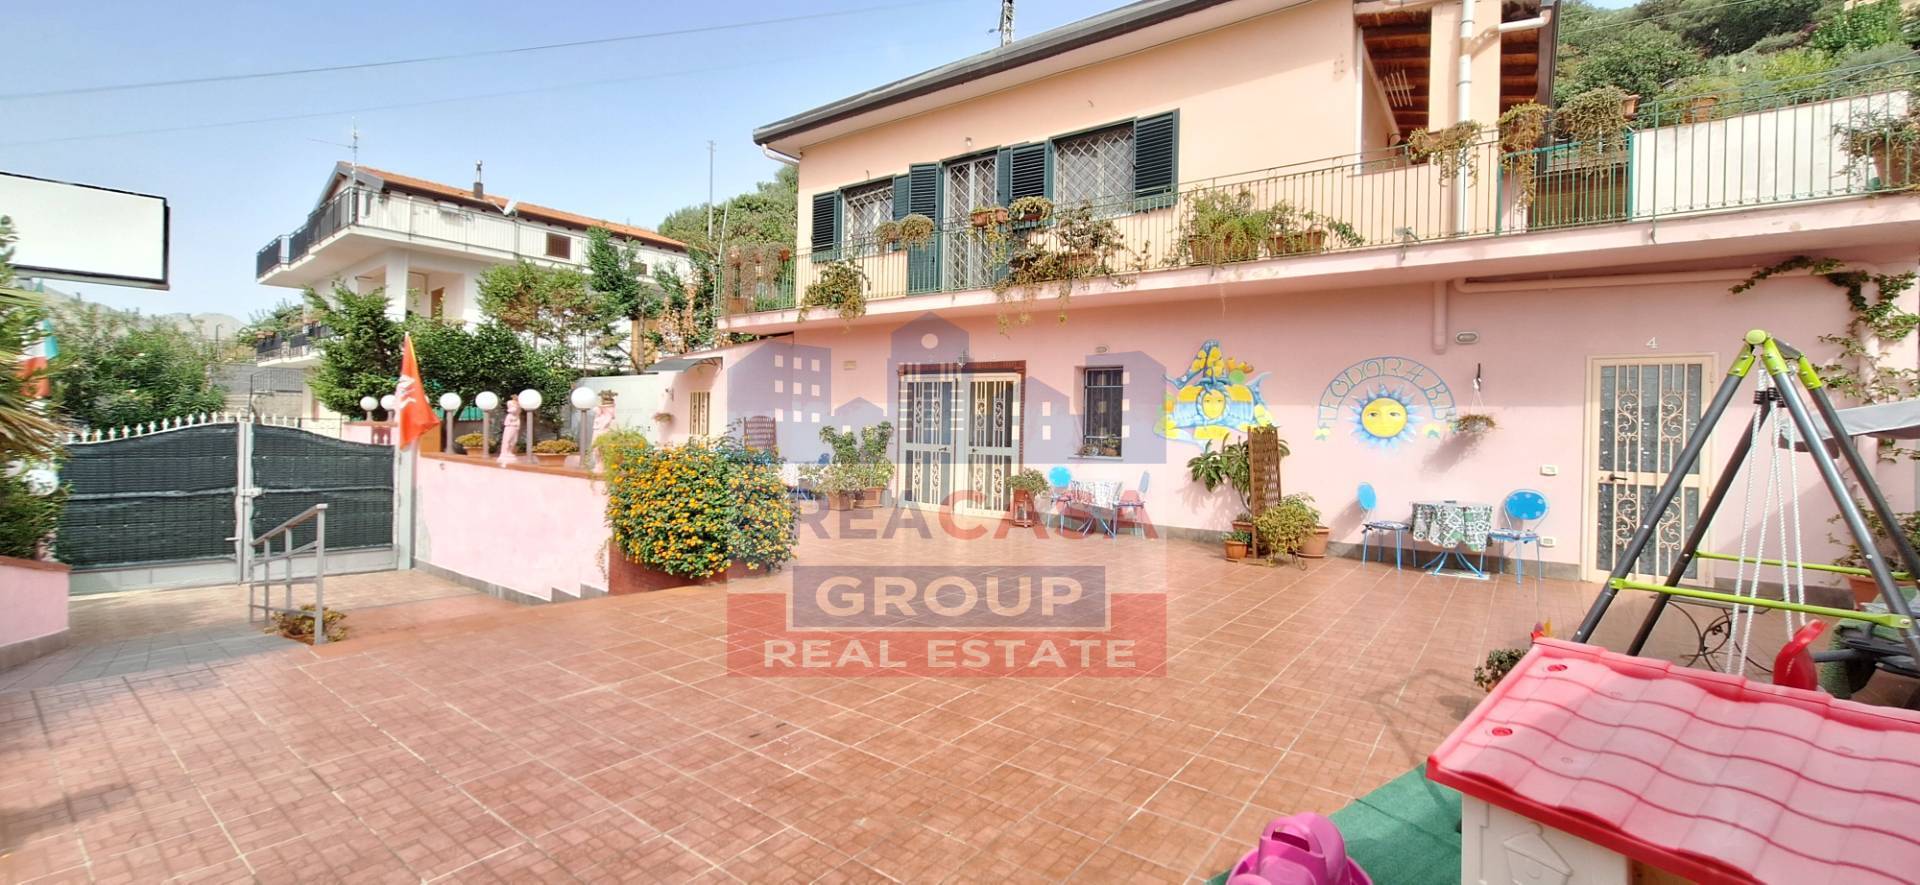 Villa in vendita a Graniti, 10 locali, zona Località: Muscian?, prezzo € 280.000 | PortaleAgenzieImmobiliari.it